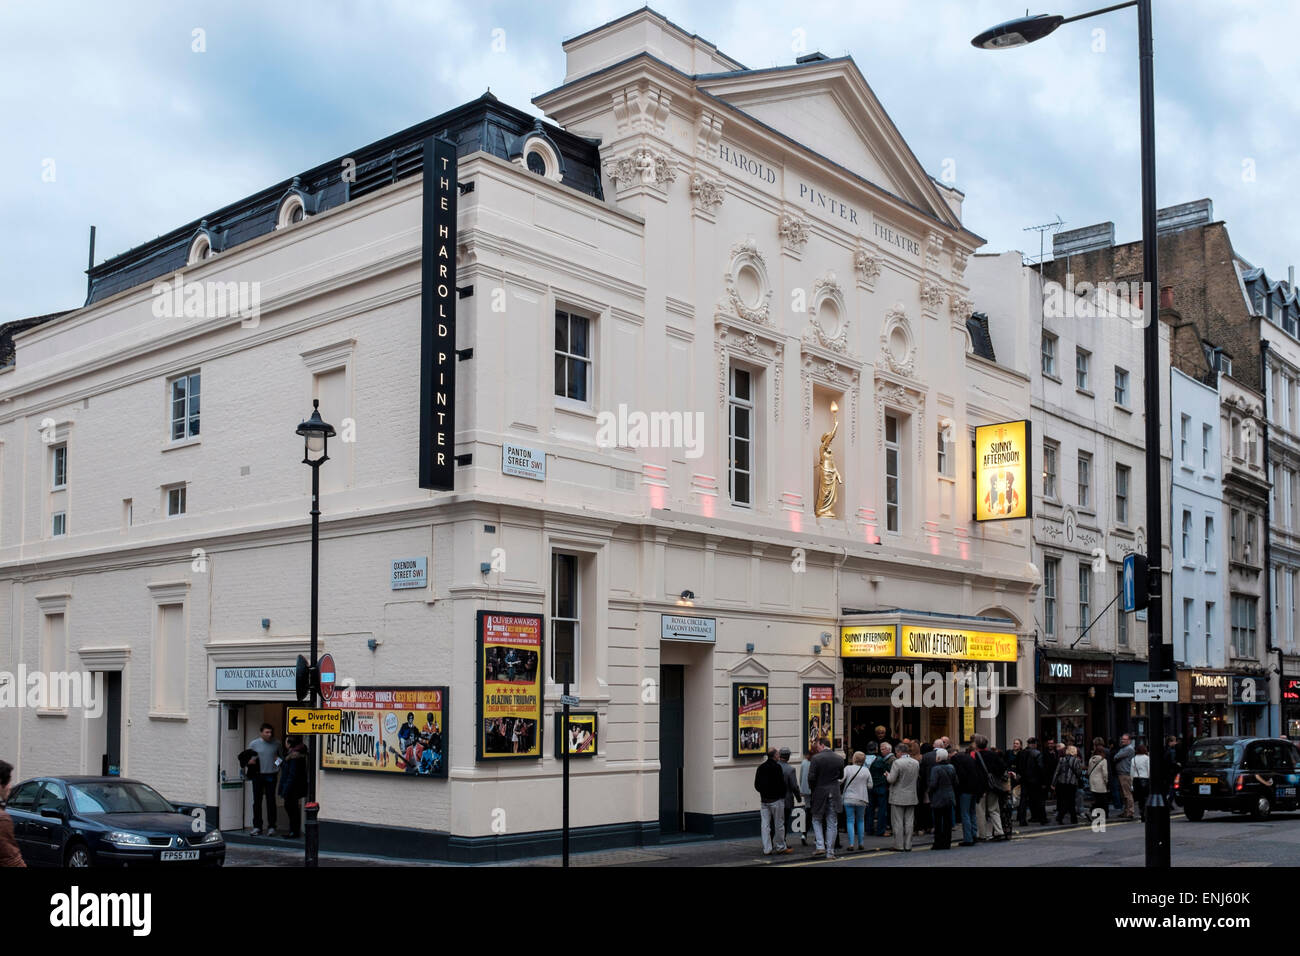 La gente haciendo cola para matinée rendimiento,el Teatro de Harold Pinter,Panton Street, Londres Foto de stock